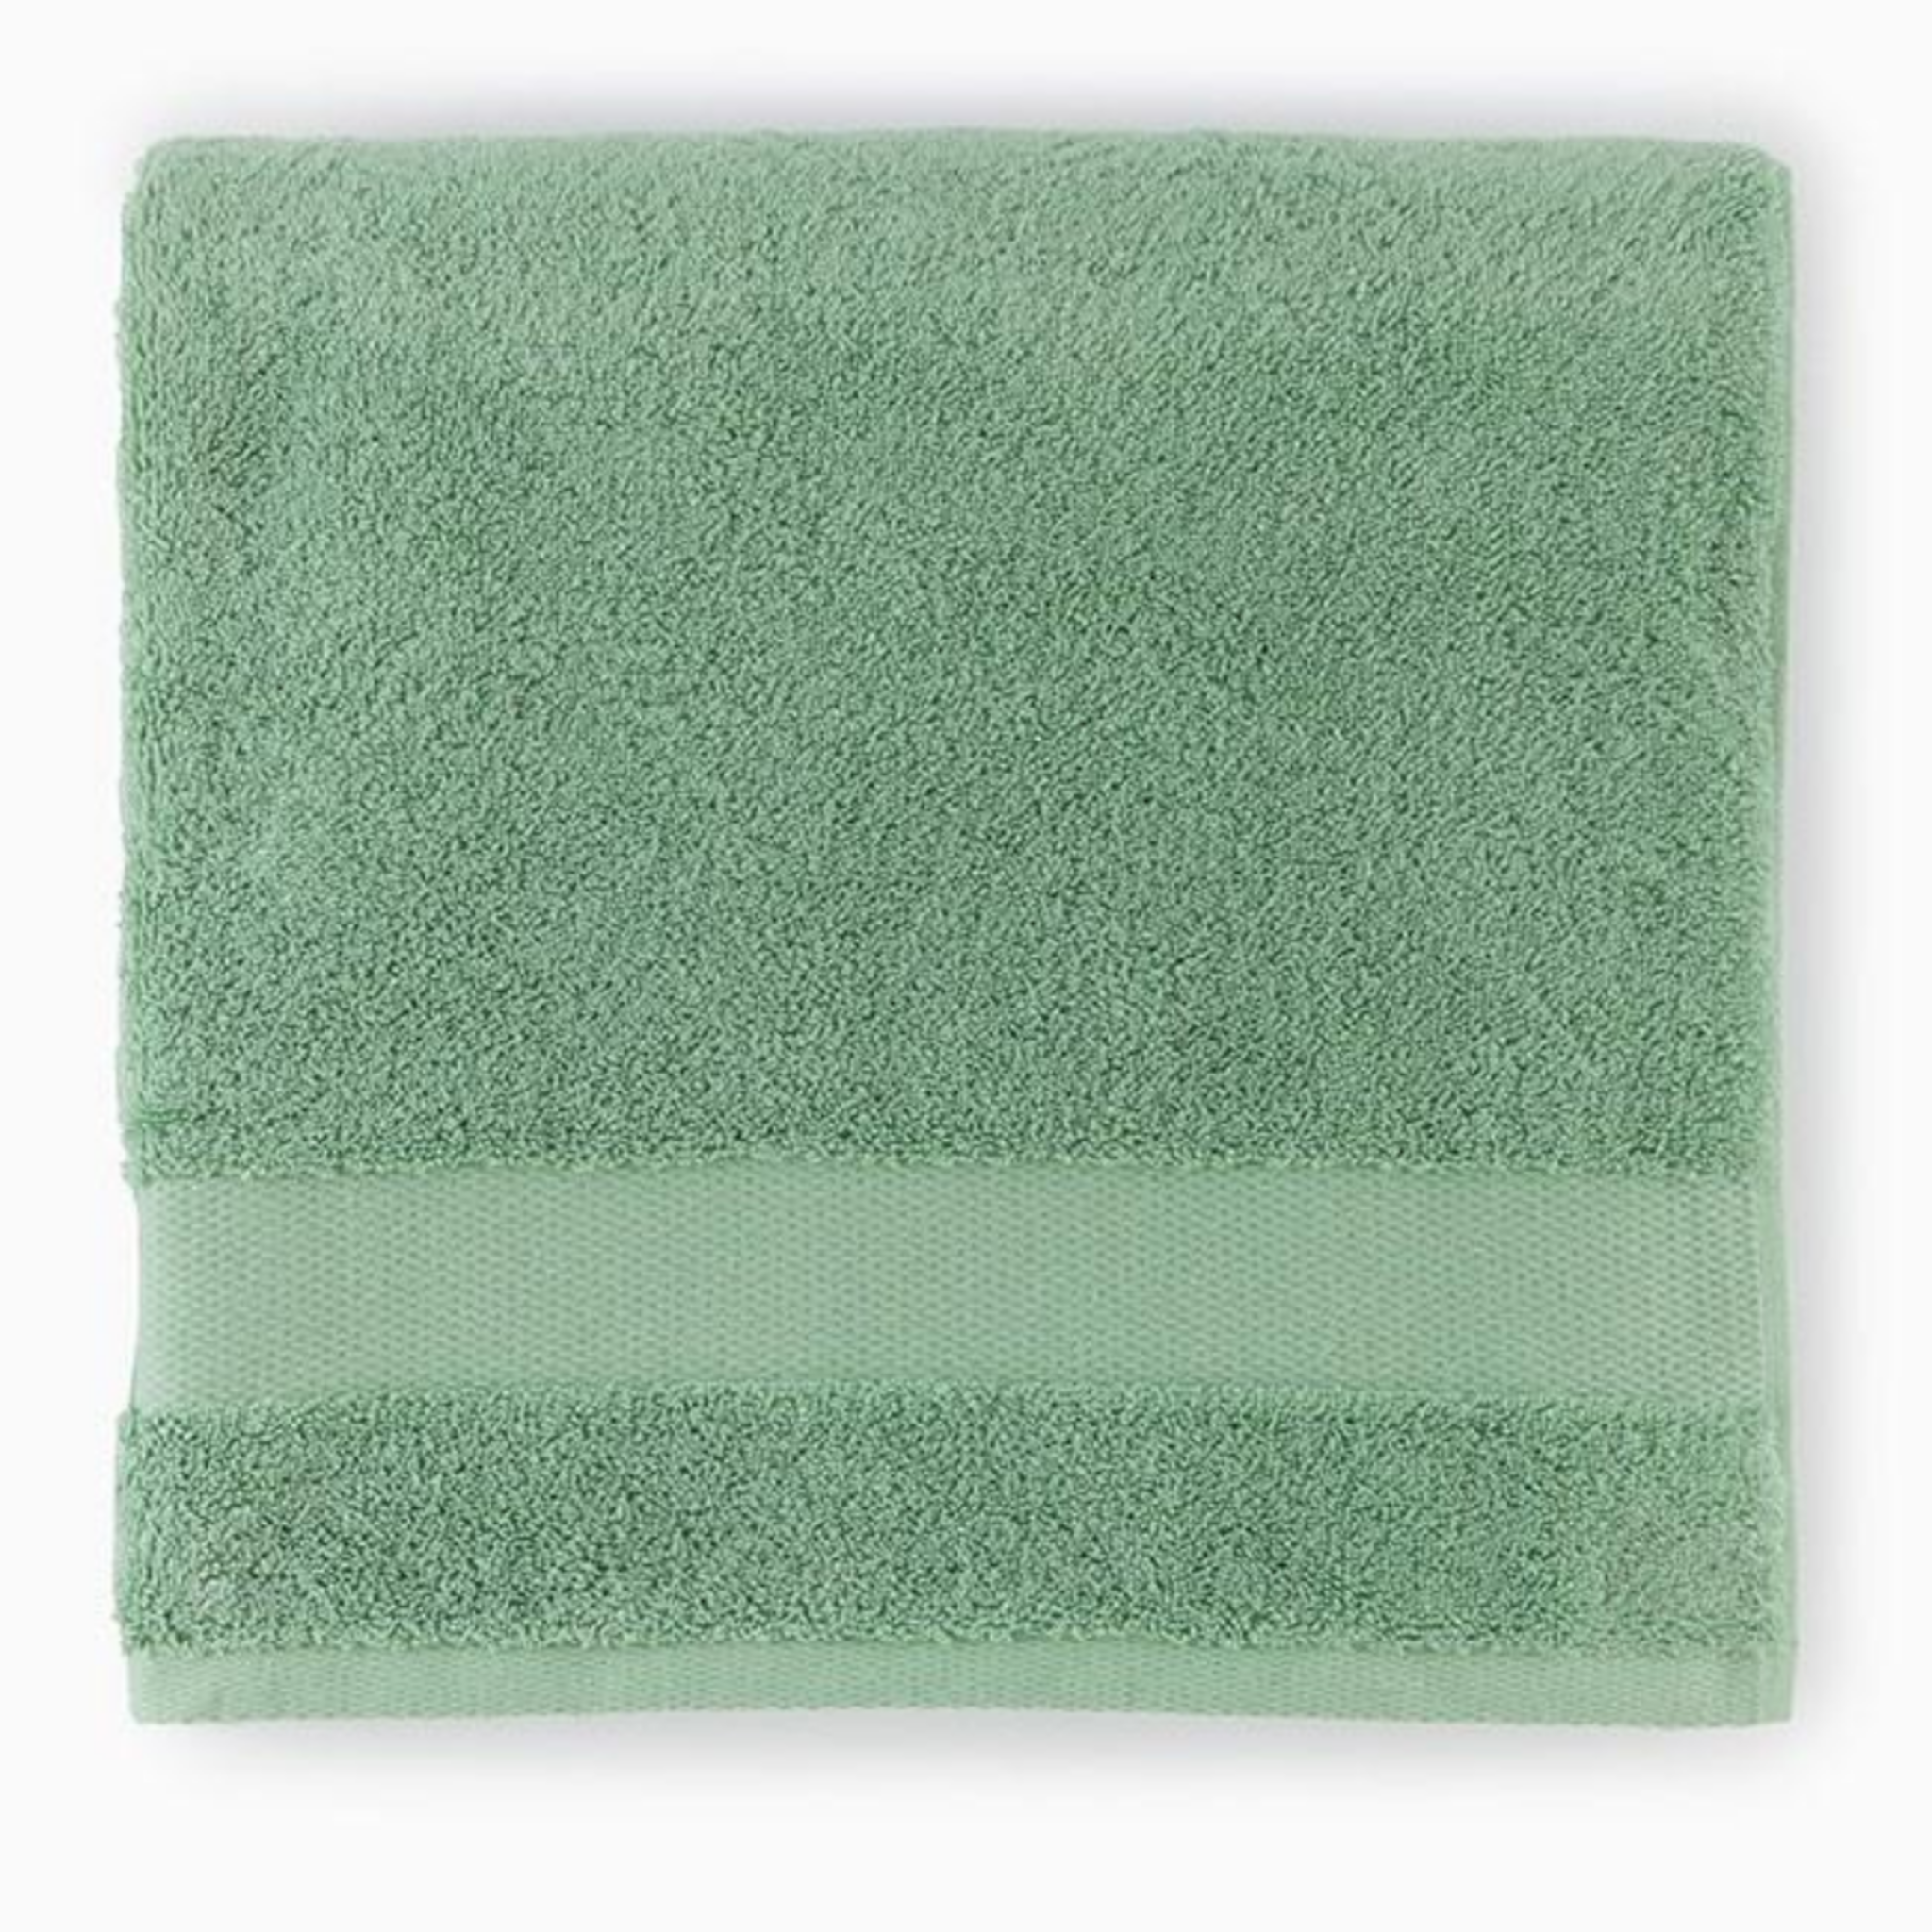 Martex Ultimate Soft Poppy Solid Bath Towel 1 ct